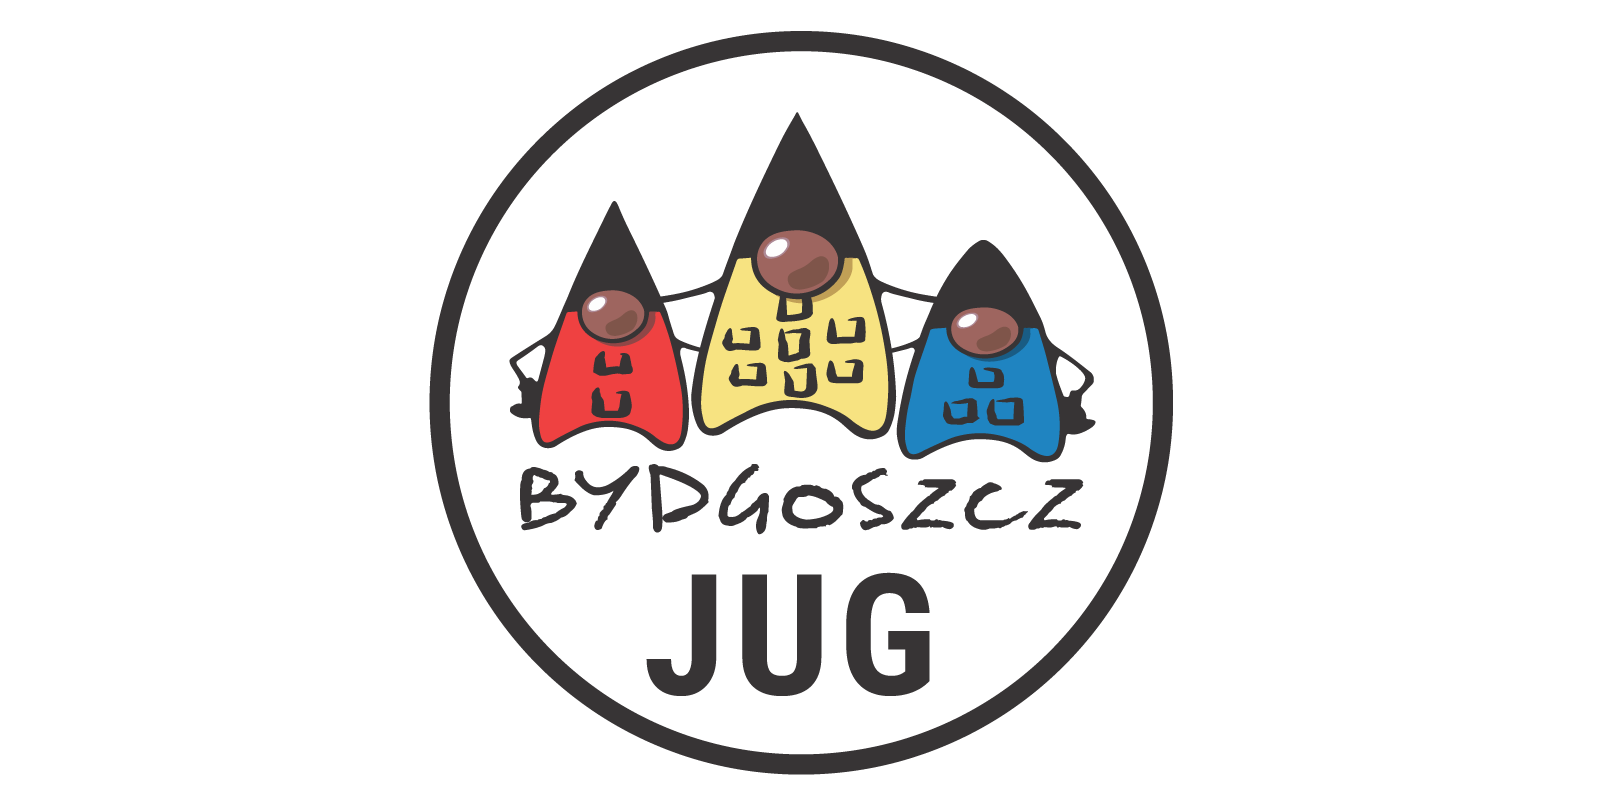 Bydgoszcz JUG